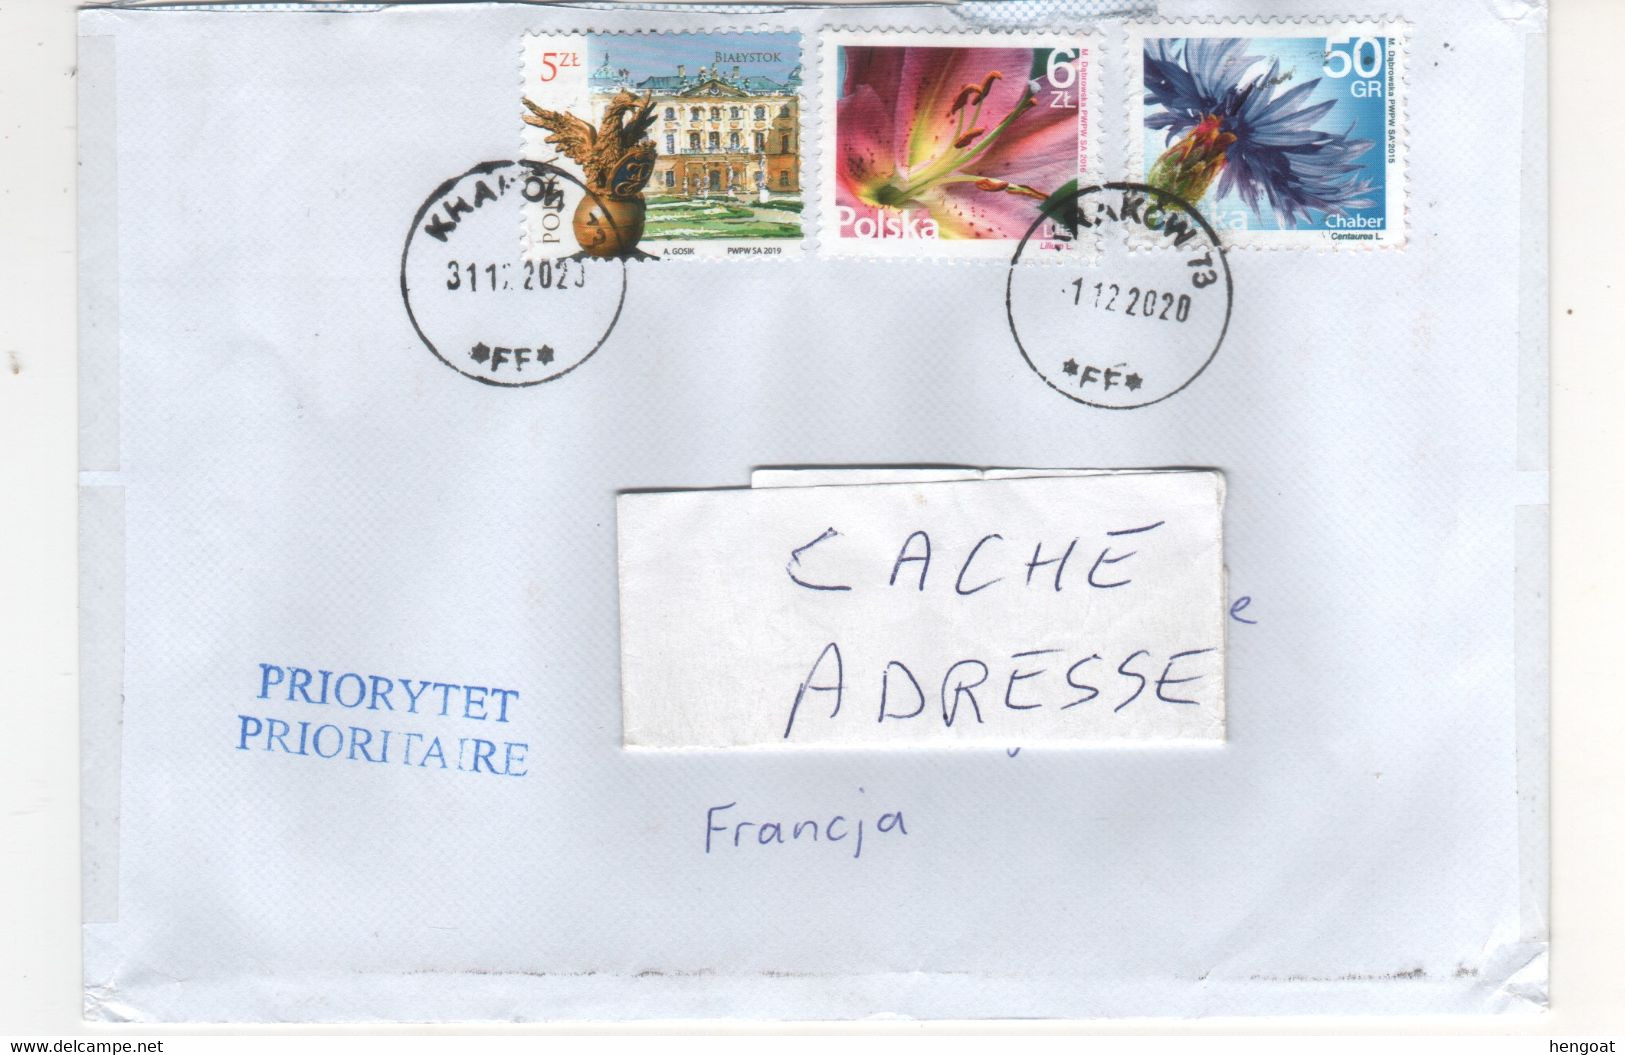 Timbres , Stamps " Fleurs  , Chateau "  Sur Lettre  Du 31/12/2020 Pour La France - Covers & Documents